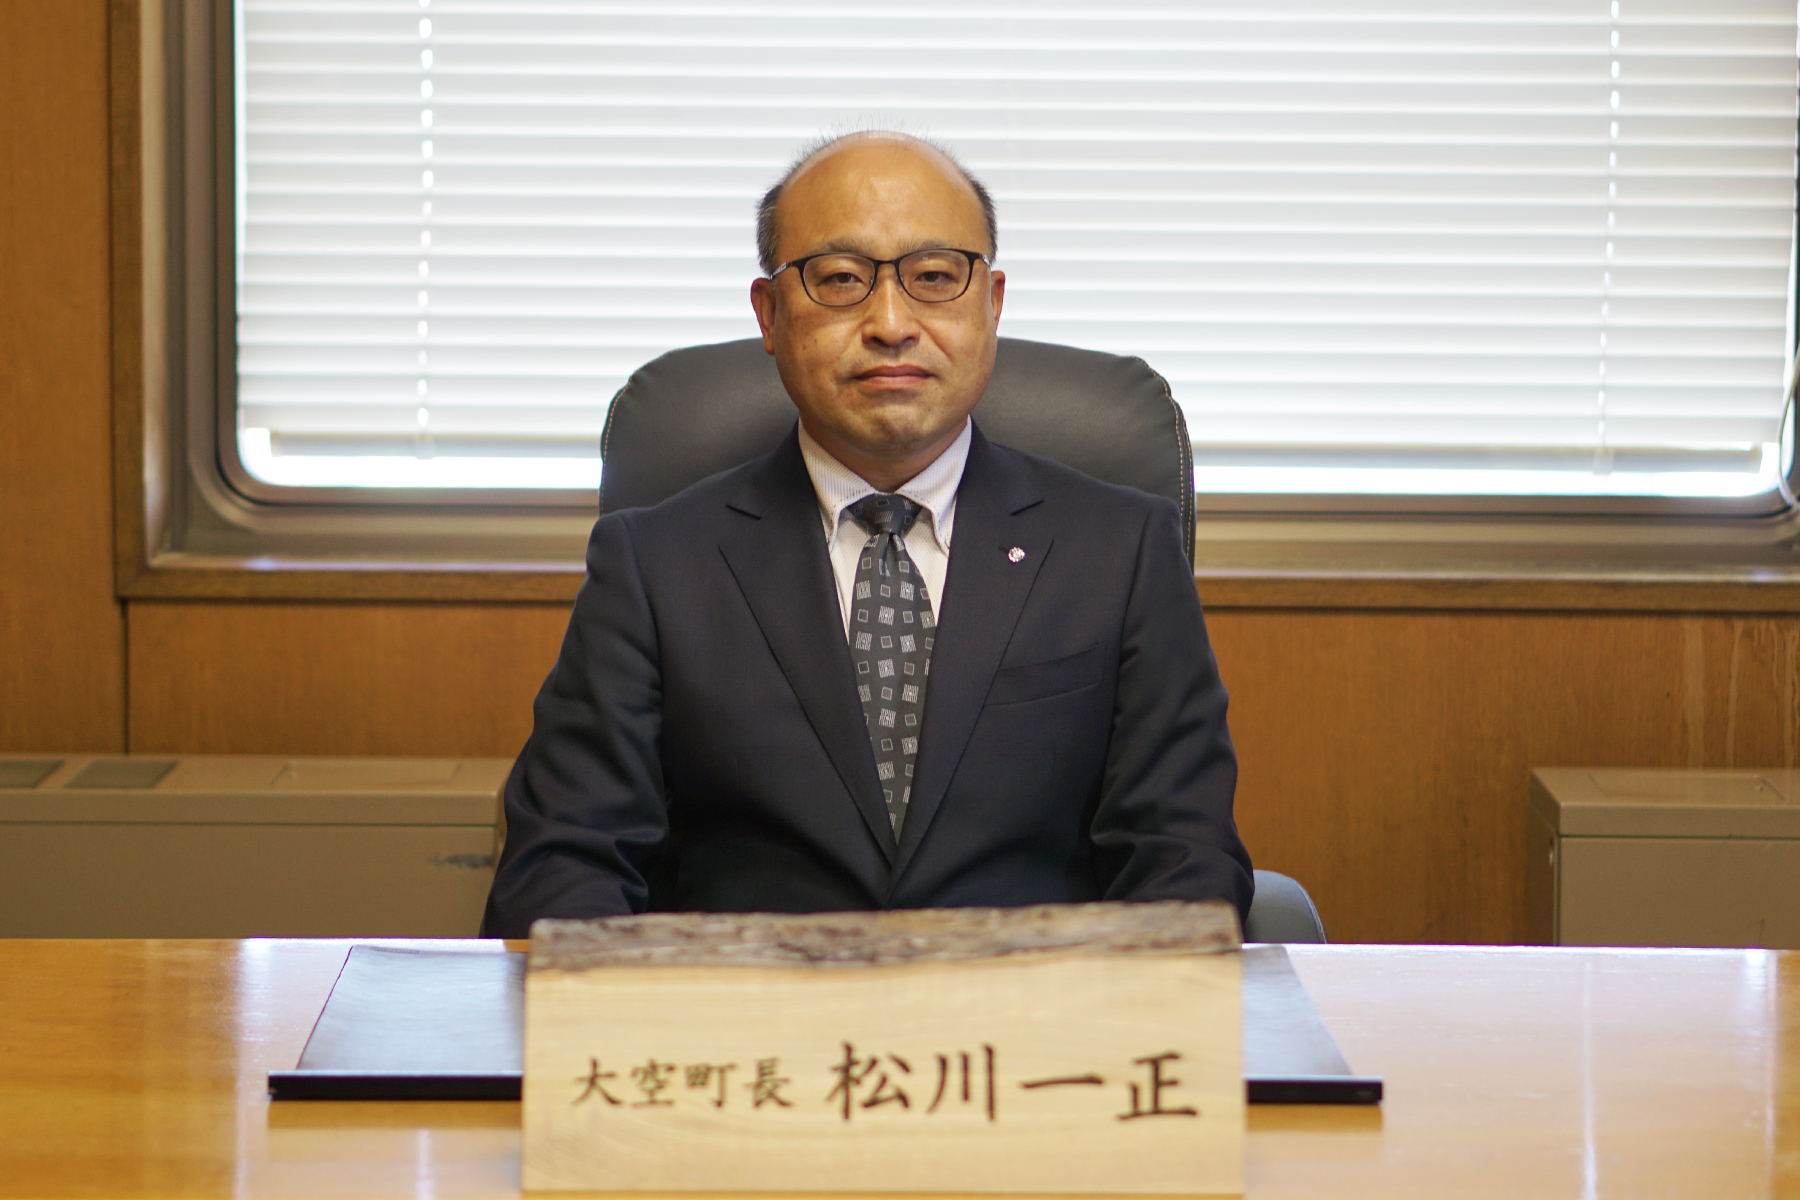 大空町長 松川一正と書かれた札が置かれた机に座る町長の写真